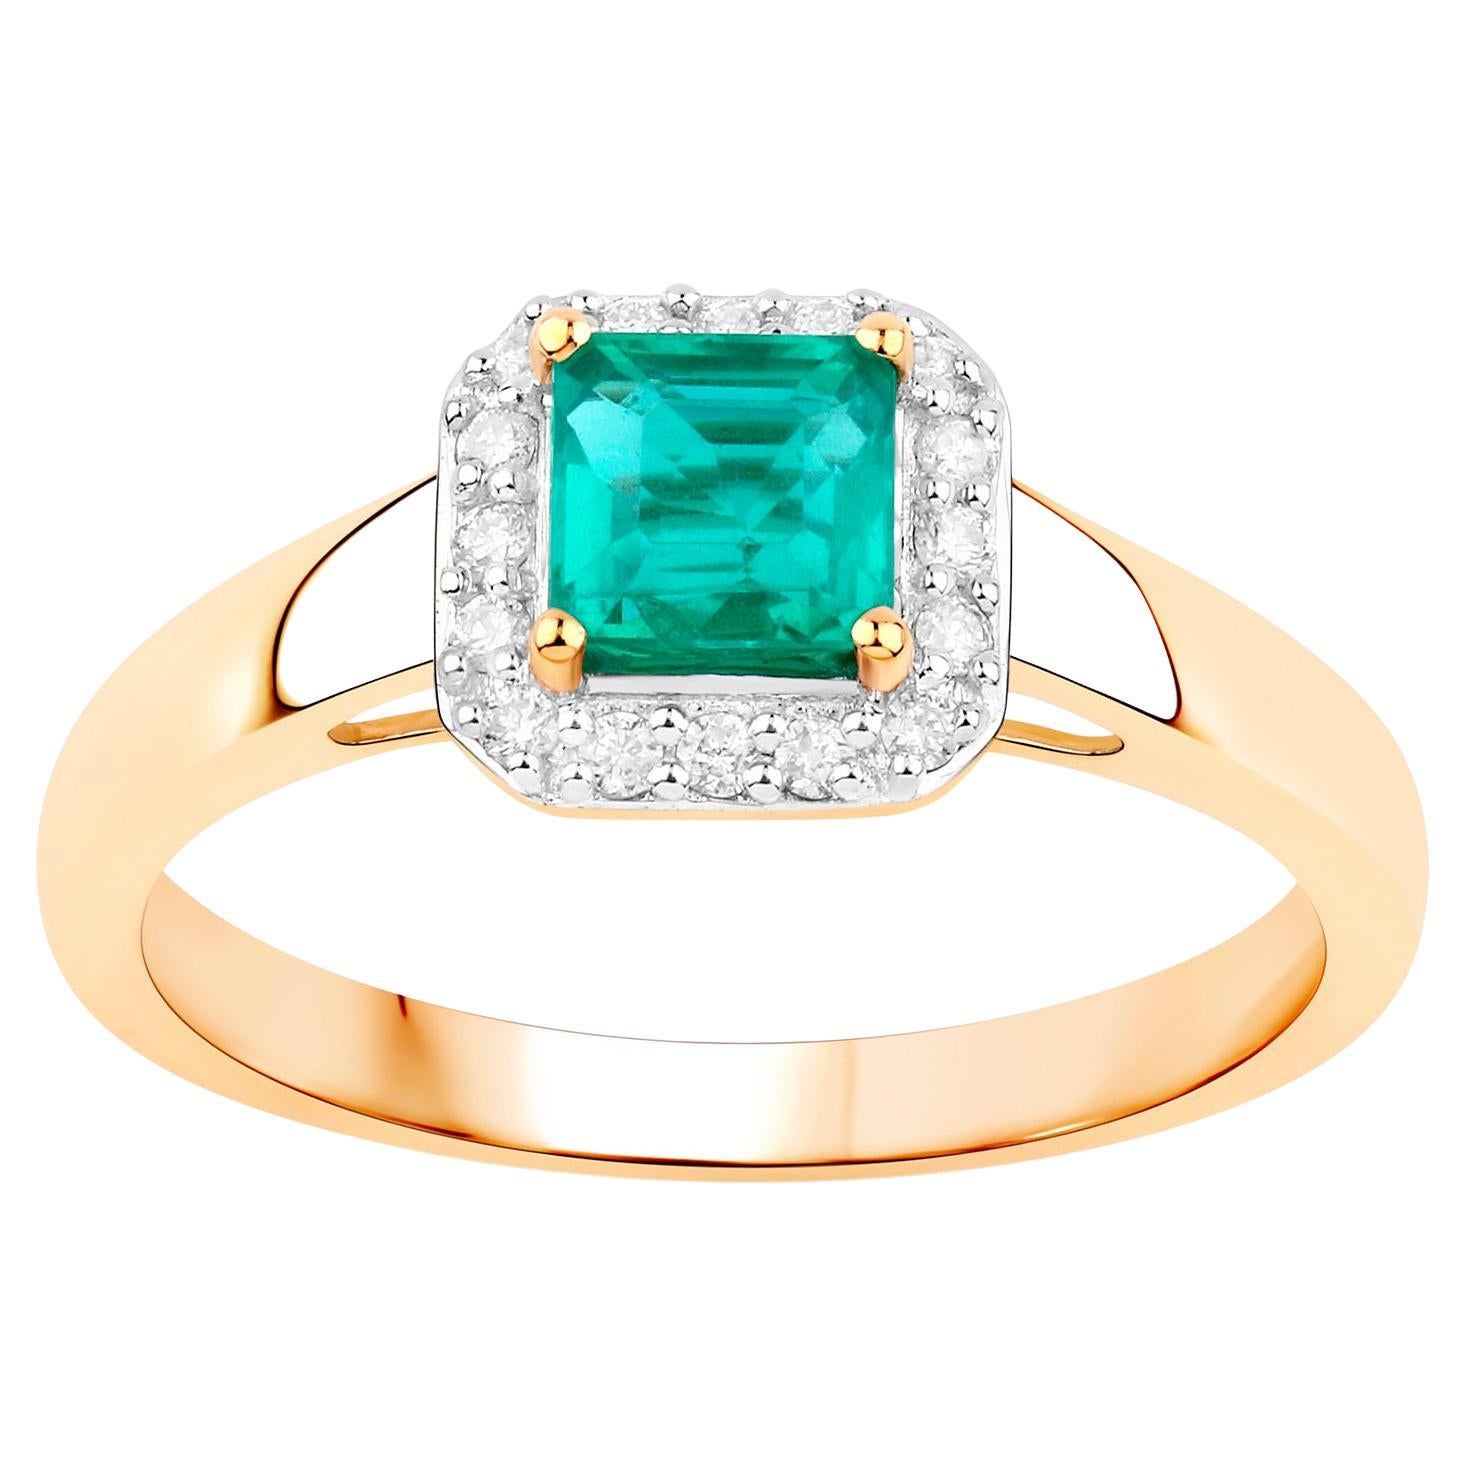 Natural Square Cut Zambian Emerald Ring Diamond Halo 14K Yellow Gold